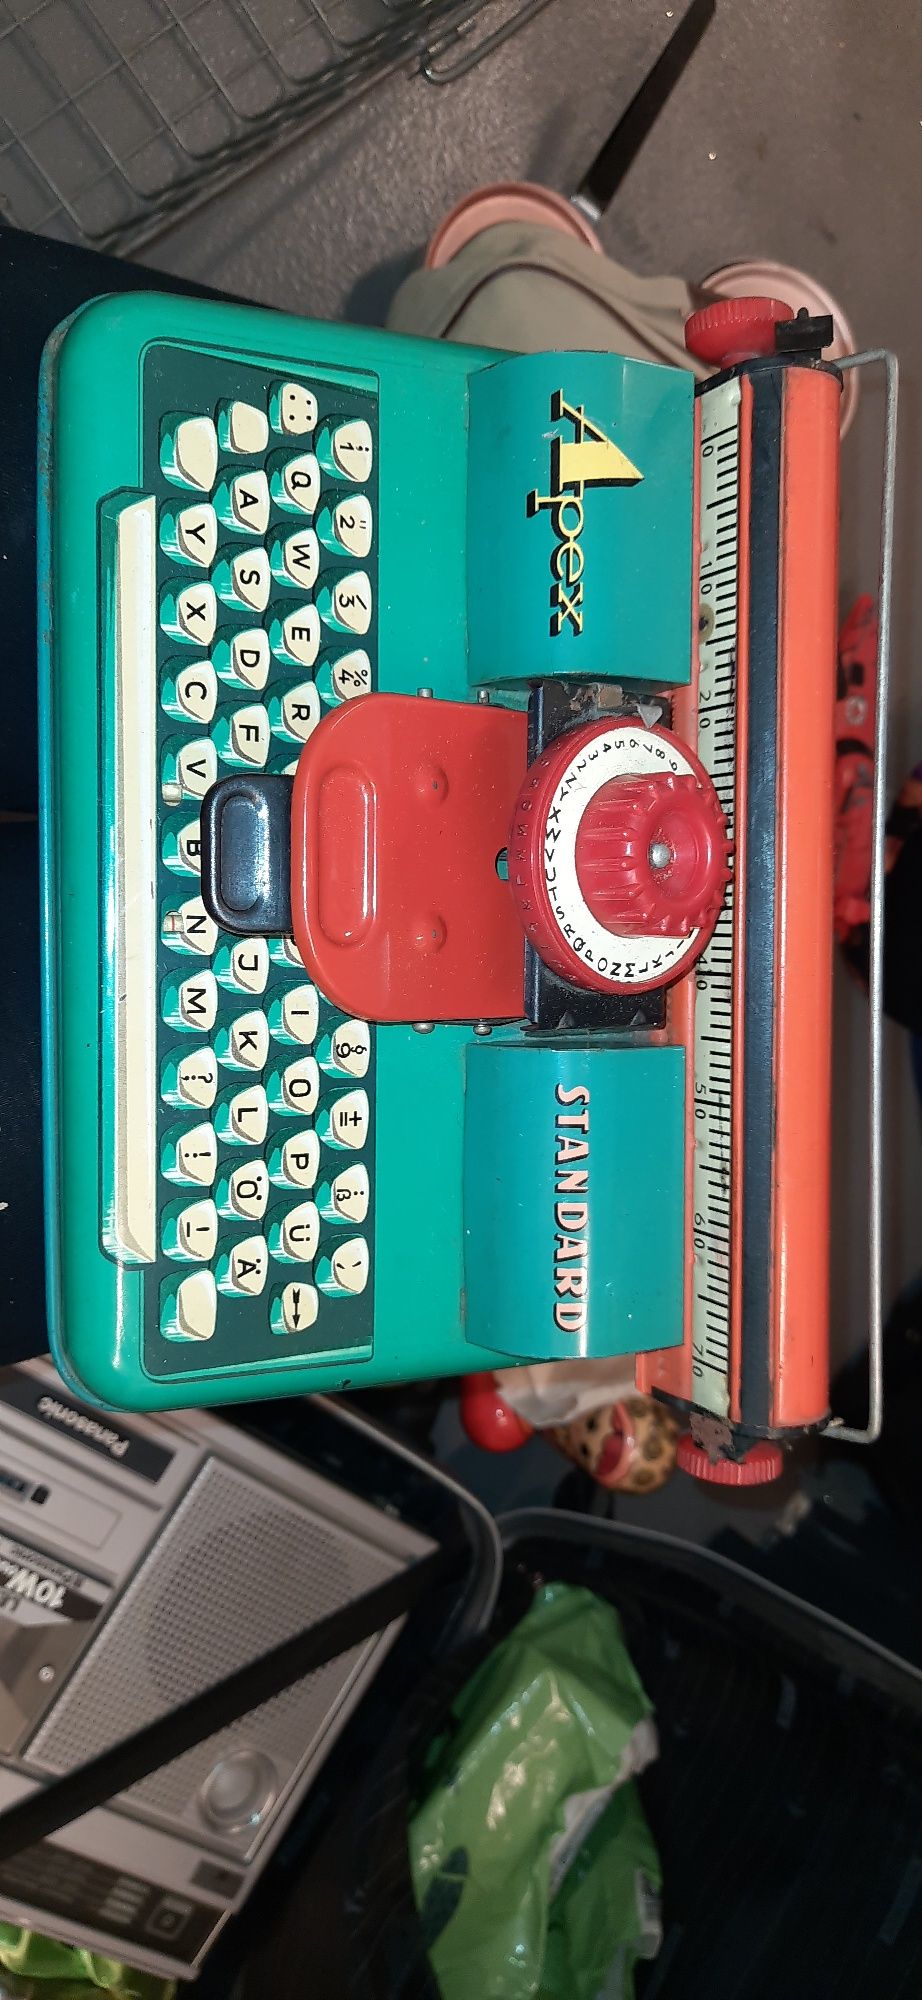 Zabawkowa stara metalowa maszyna do pisania dla dzieci Apex Standard